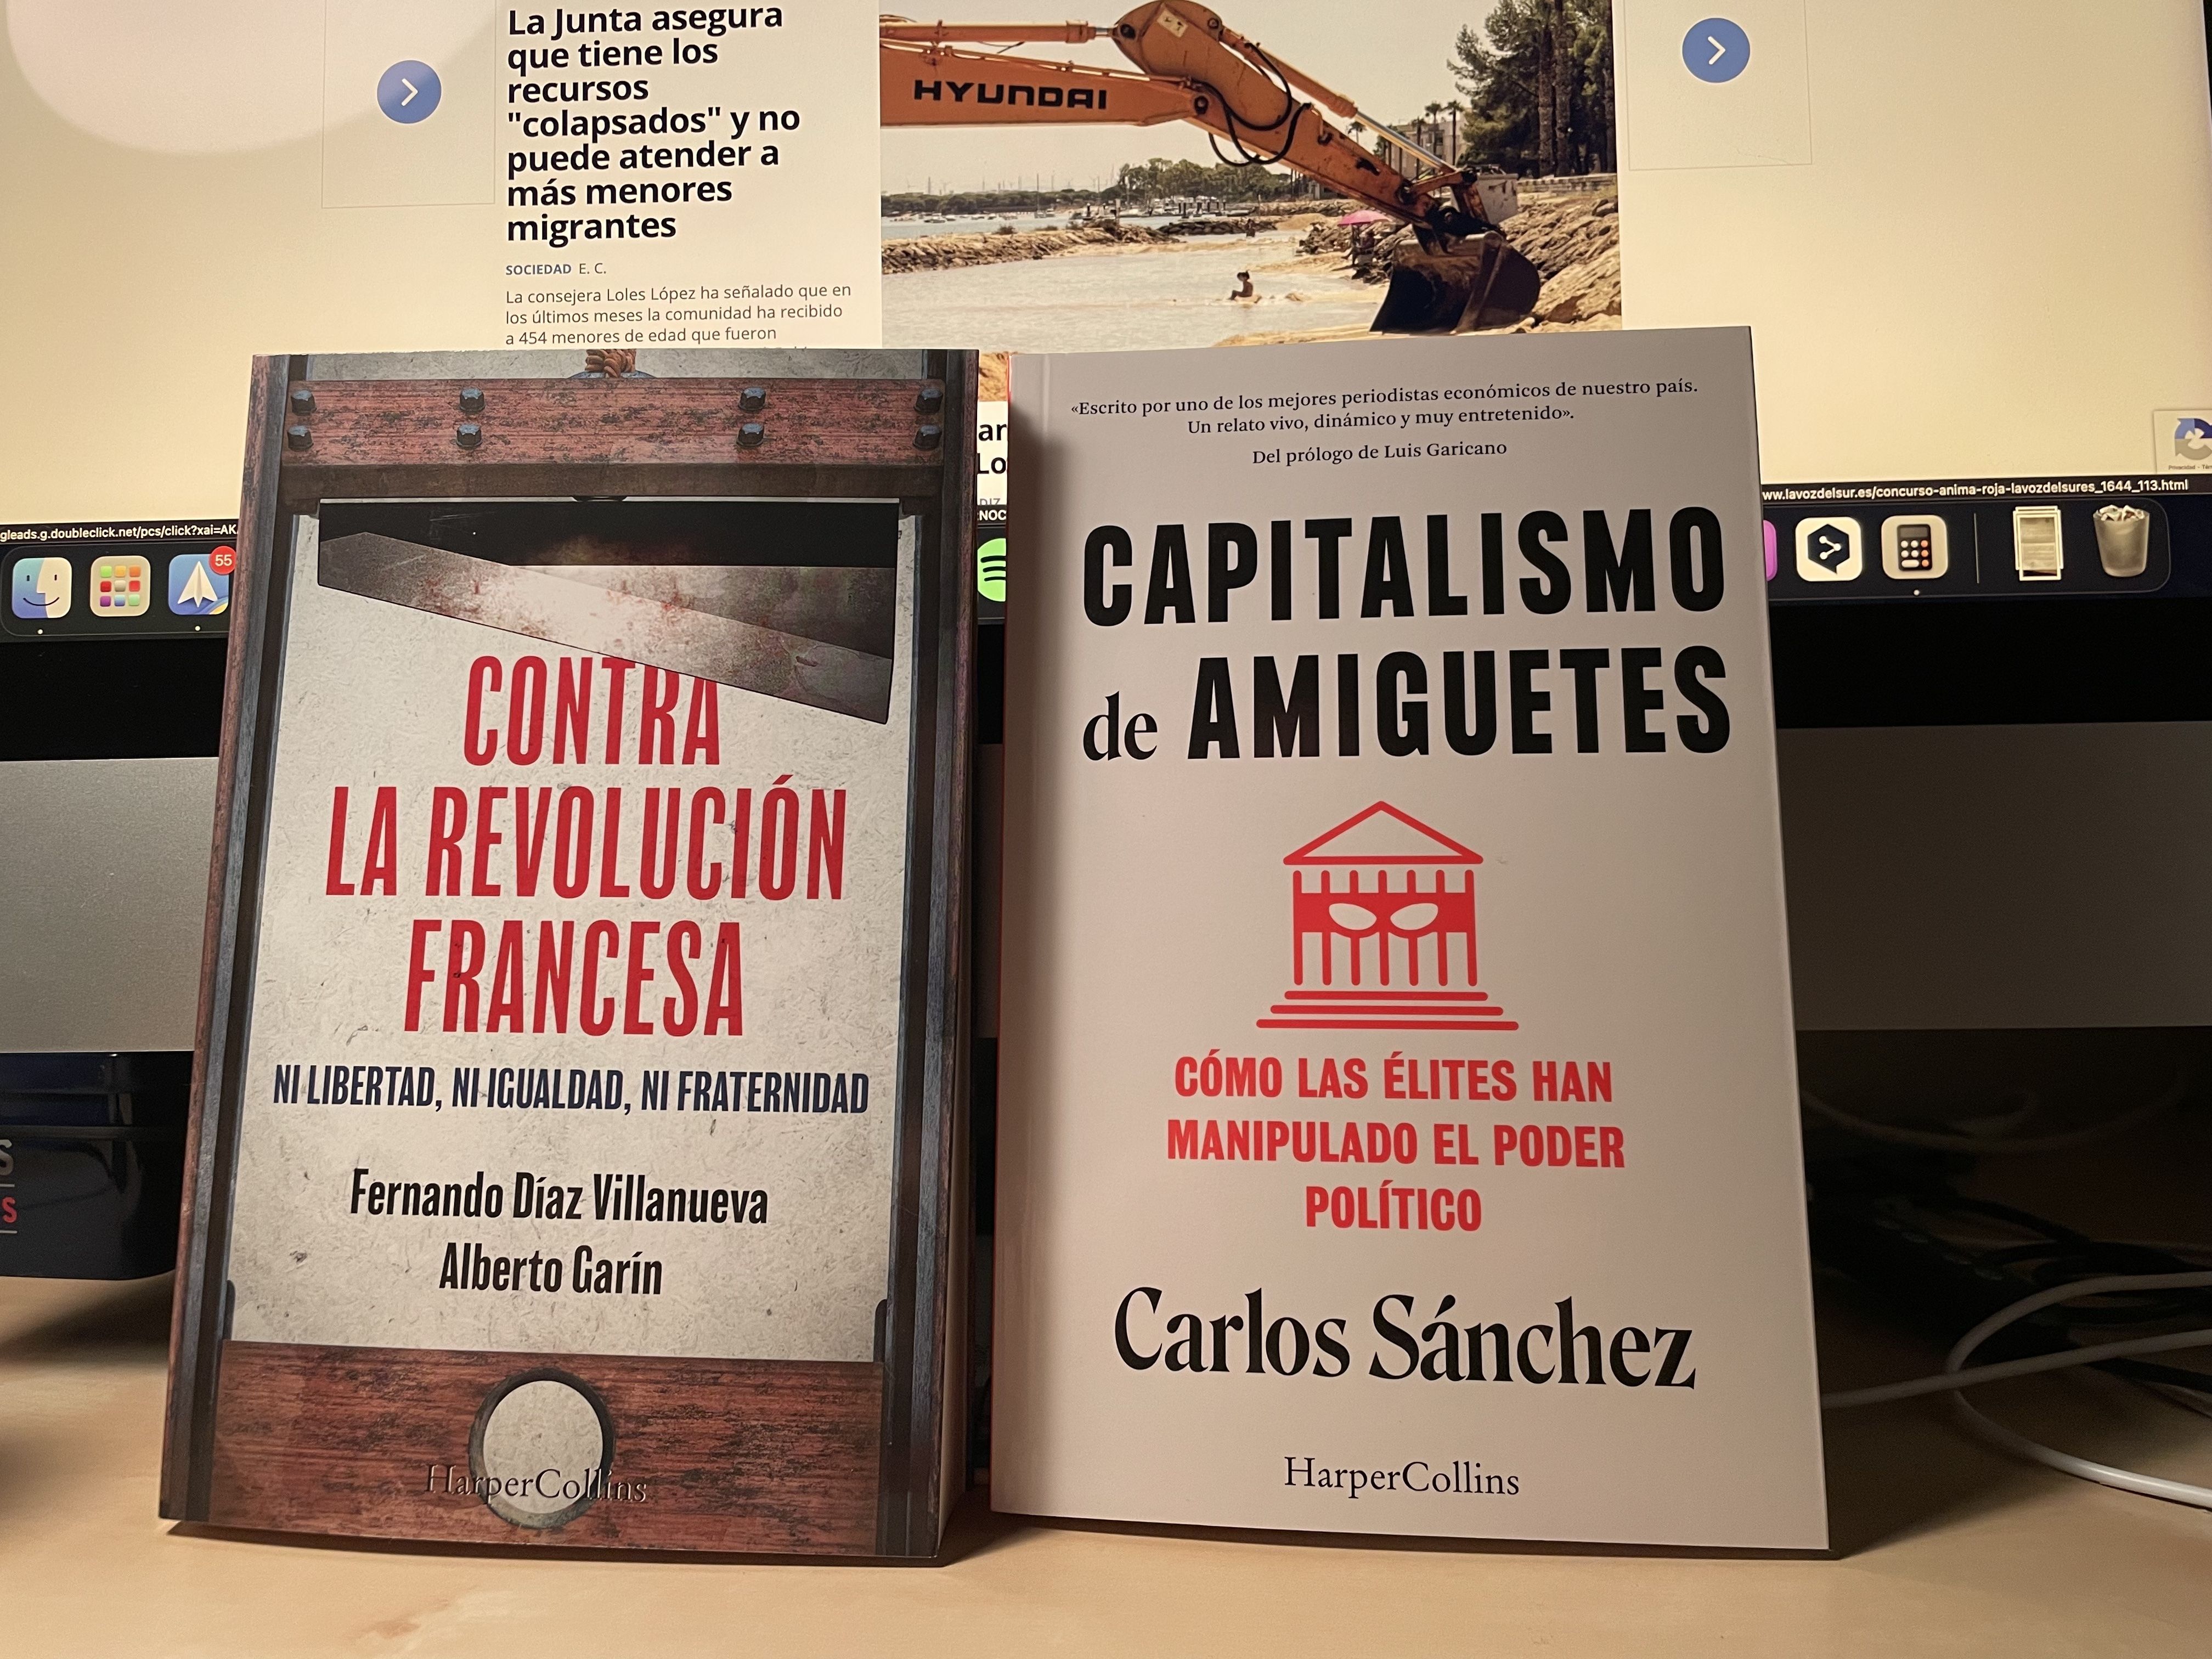 'Contra la revolución francesa' y 'Capitalismo de amiguetes'.